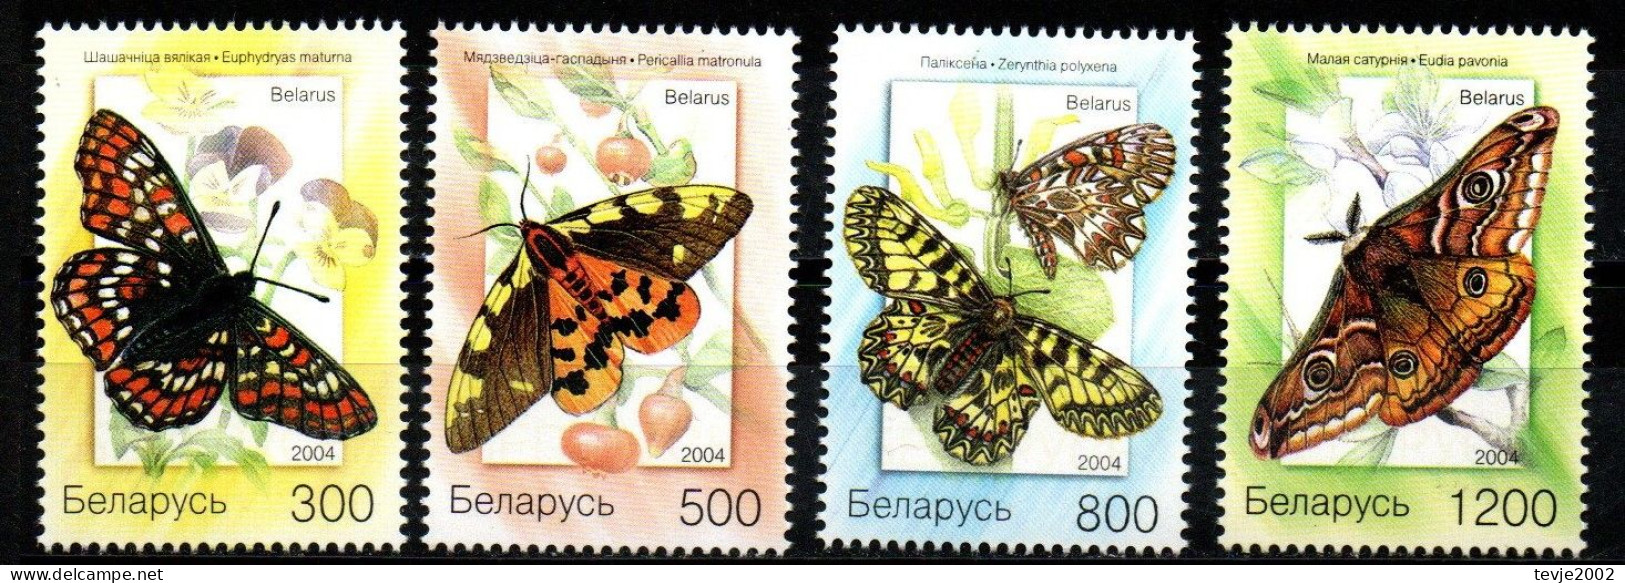 Weißrussland Belarus 2004 - Mi.Nr. 557 - 560 - Postfrisch MNH - Tiere Animals Schmetterlinge Butterflies - Butterflies